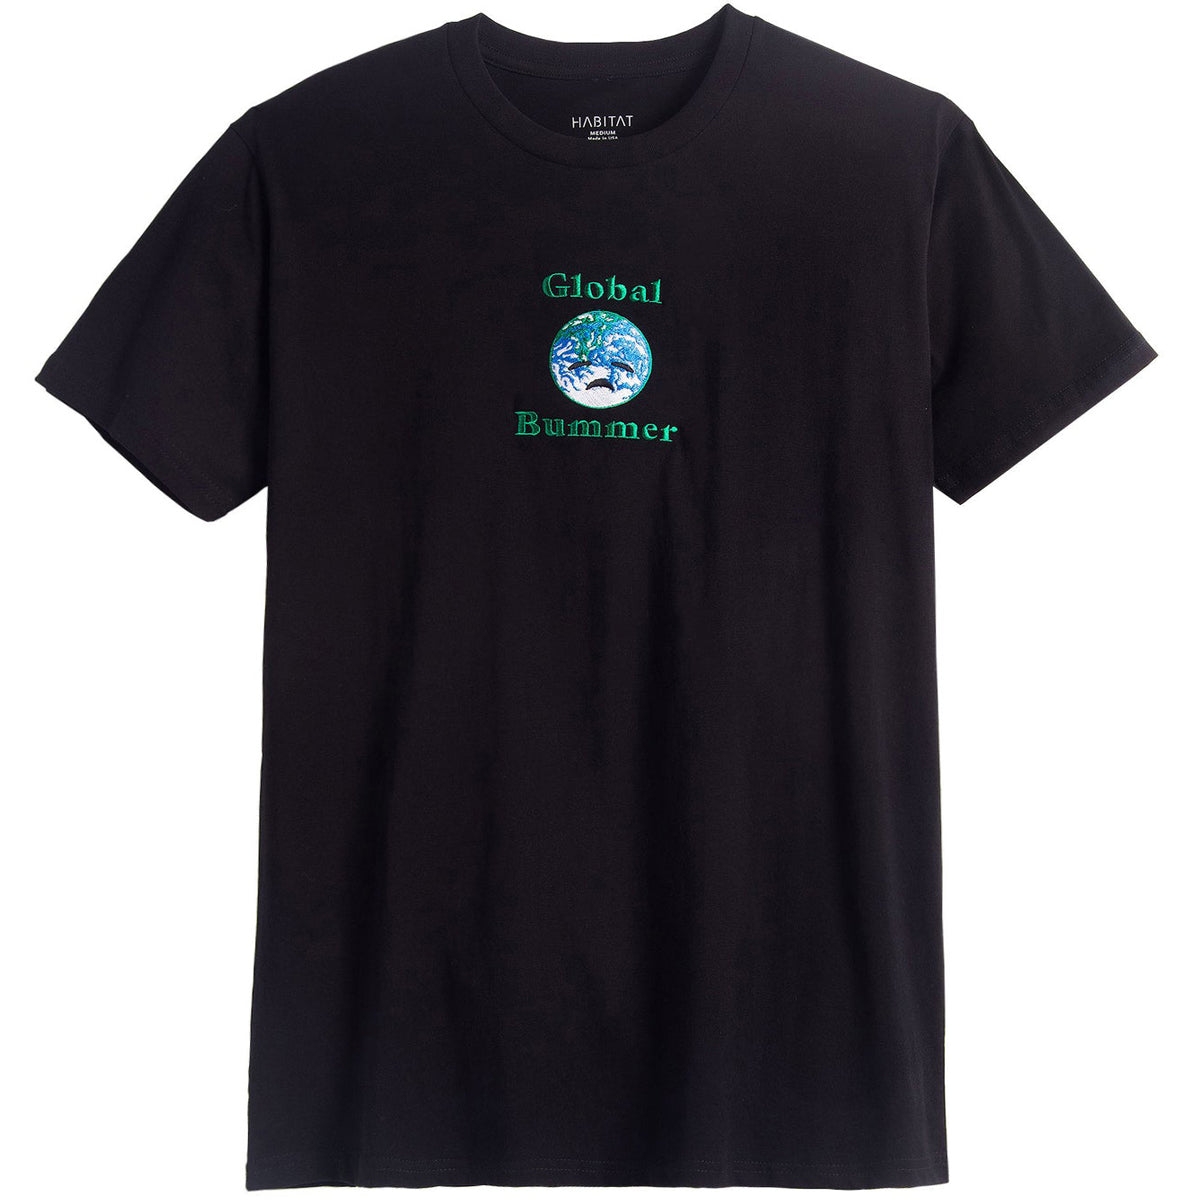 Habitat Global Bummer Embroidered T-Shirt - Black image 1